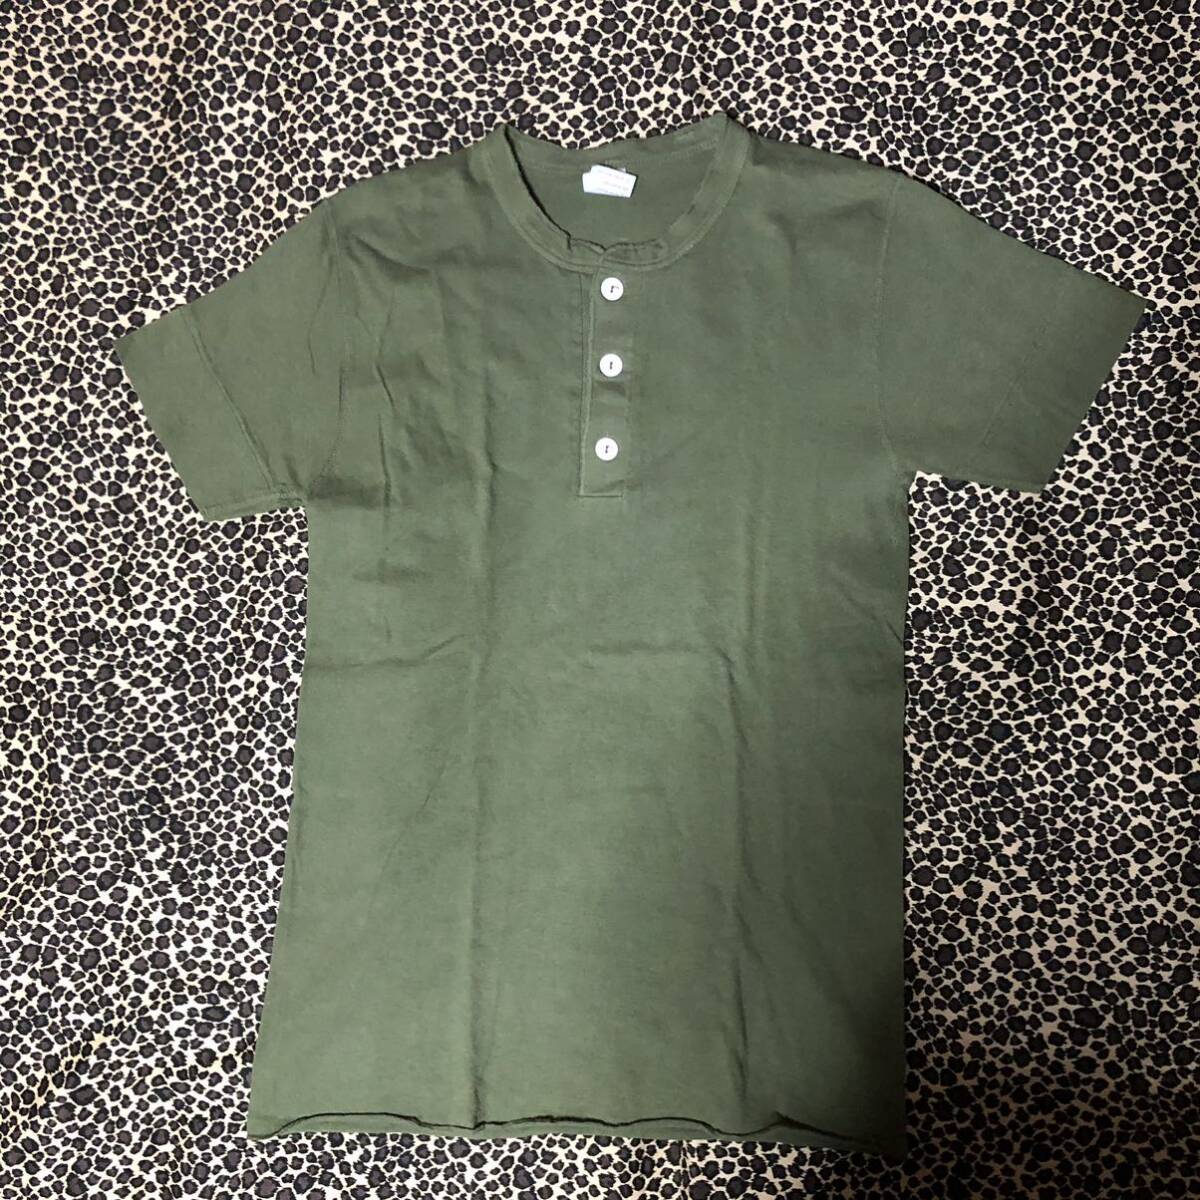  美品 Healthknit ヘンリーネック 半袖 Tシャツ M グリーン系 ヘルスニット 